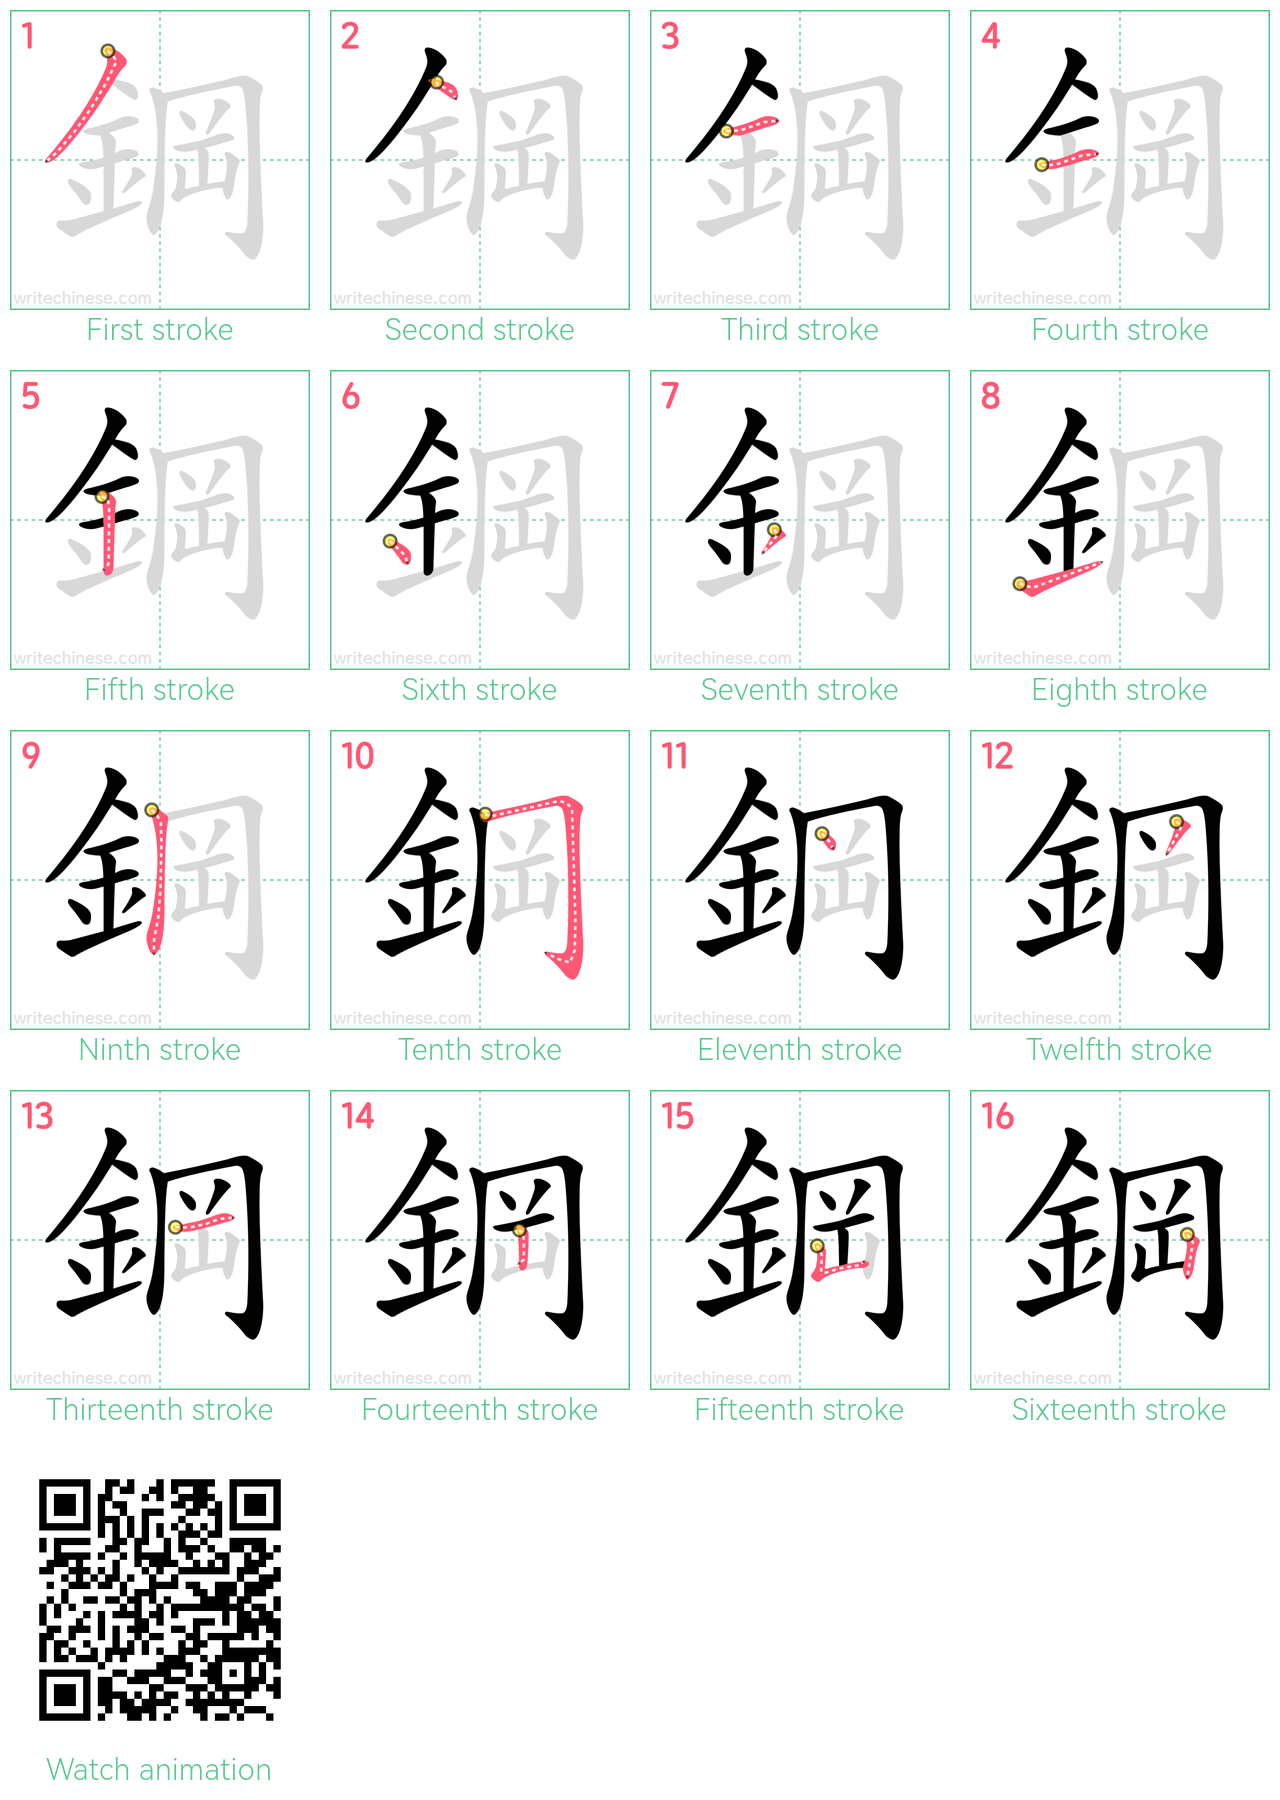 鋼 step-by-step stroke order diagrams